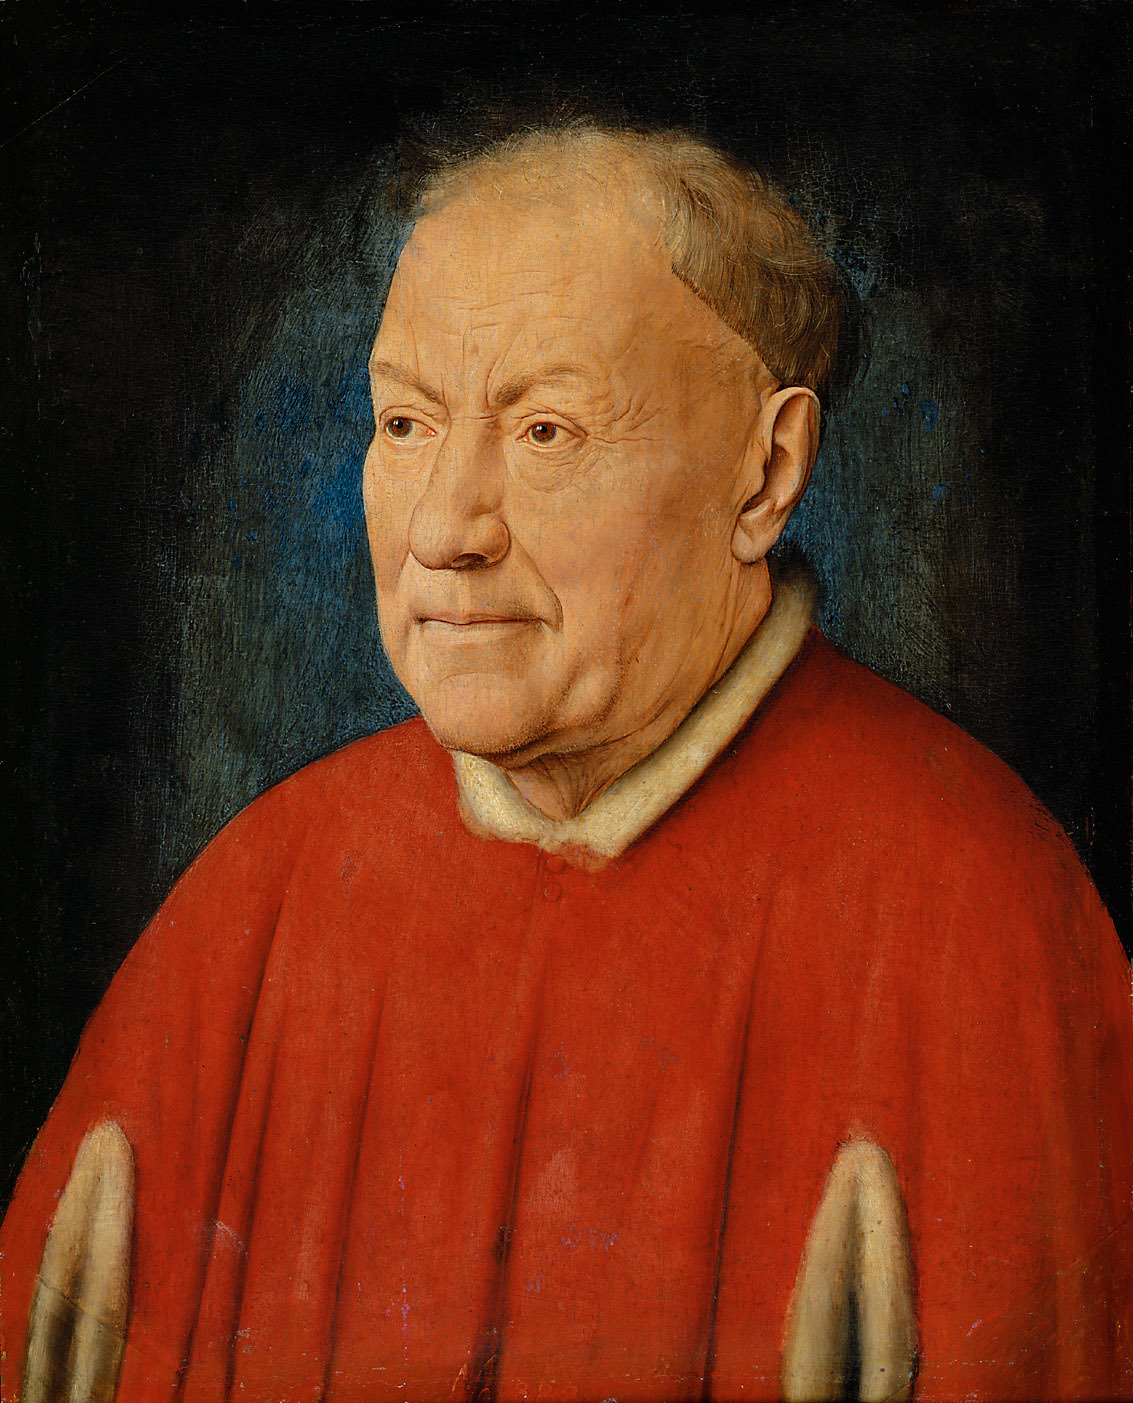 ニッコロ・アルベルガーティ枢機卿 by Jan van Eyck - 1380/90年代 - 34.1 x 27.3 cm 